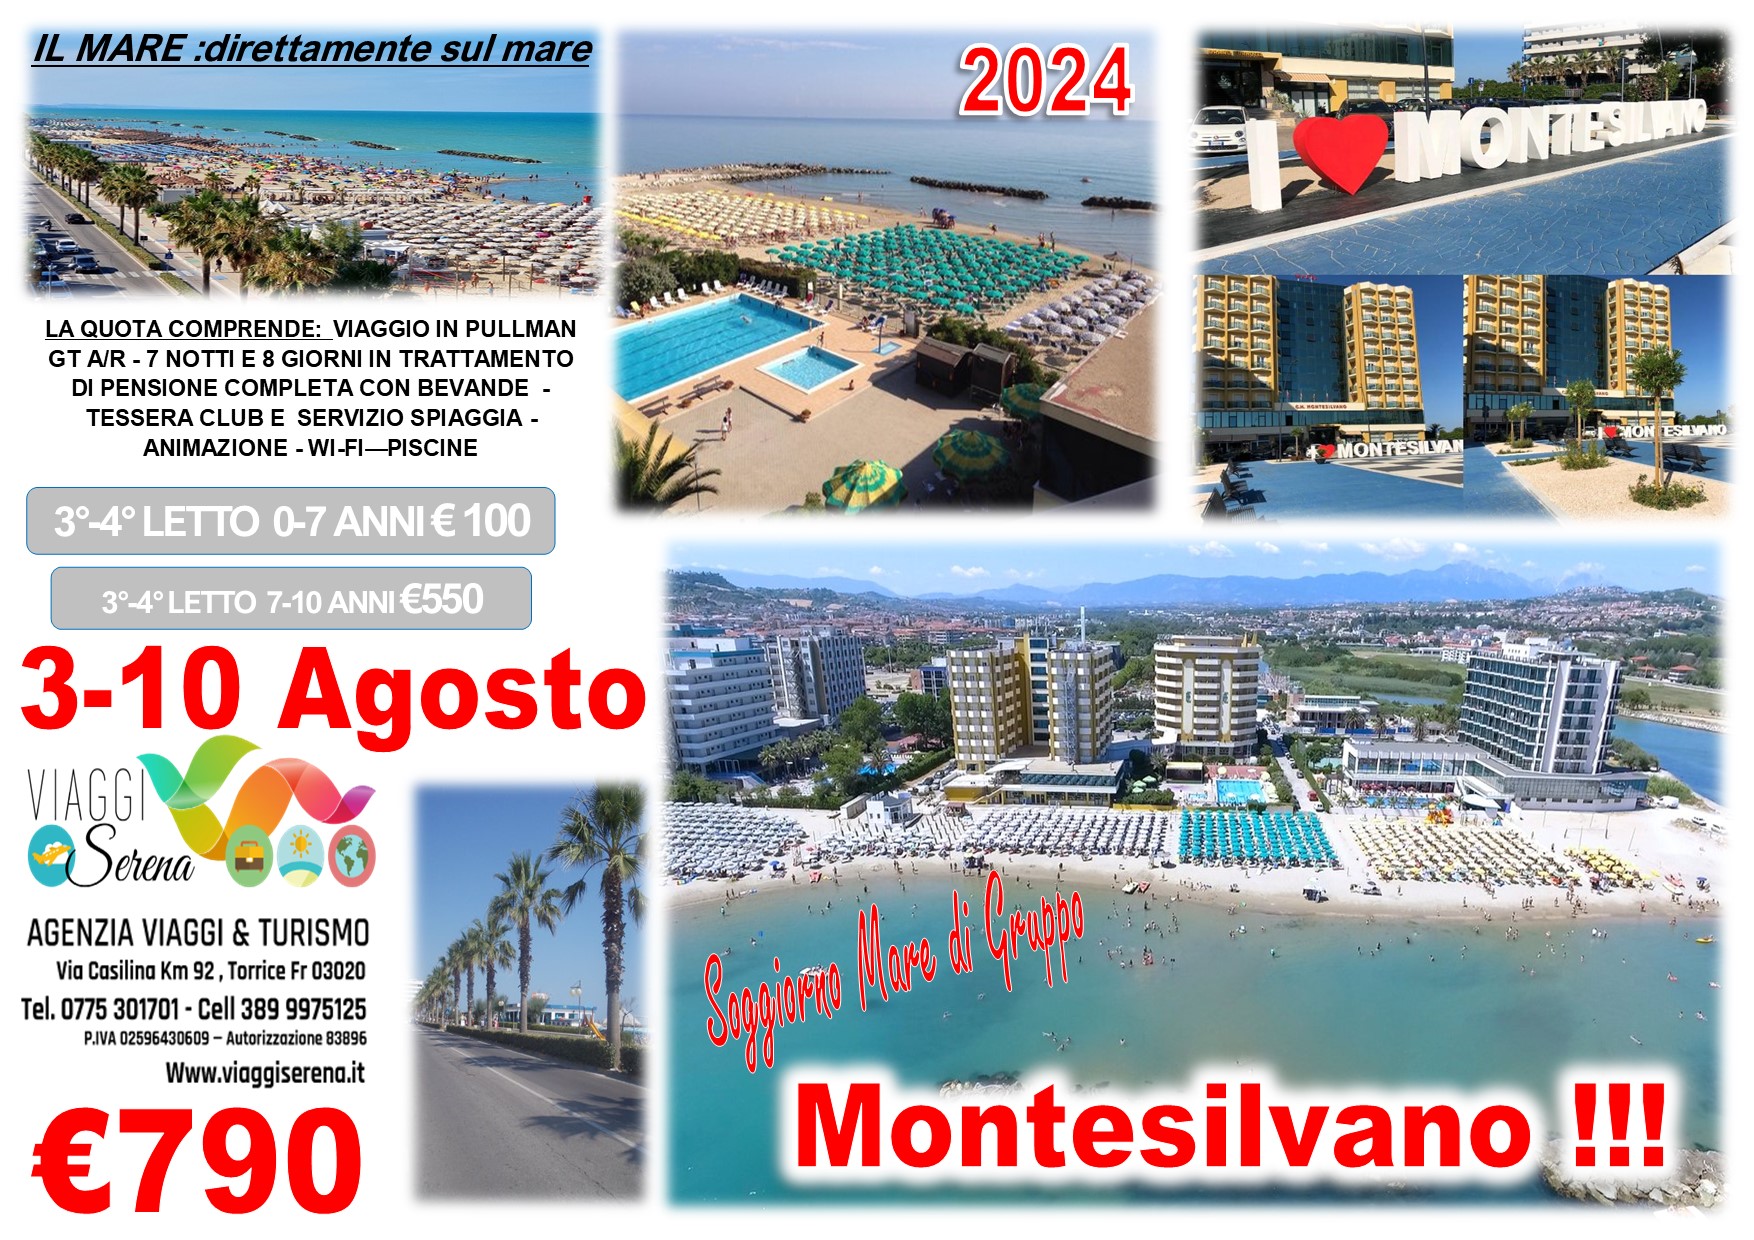 Viaggi di gruppo: Villaggio Mare Montesilvano 3-10 Agosto €790,00